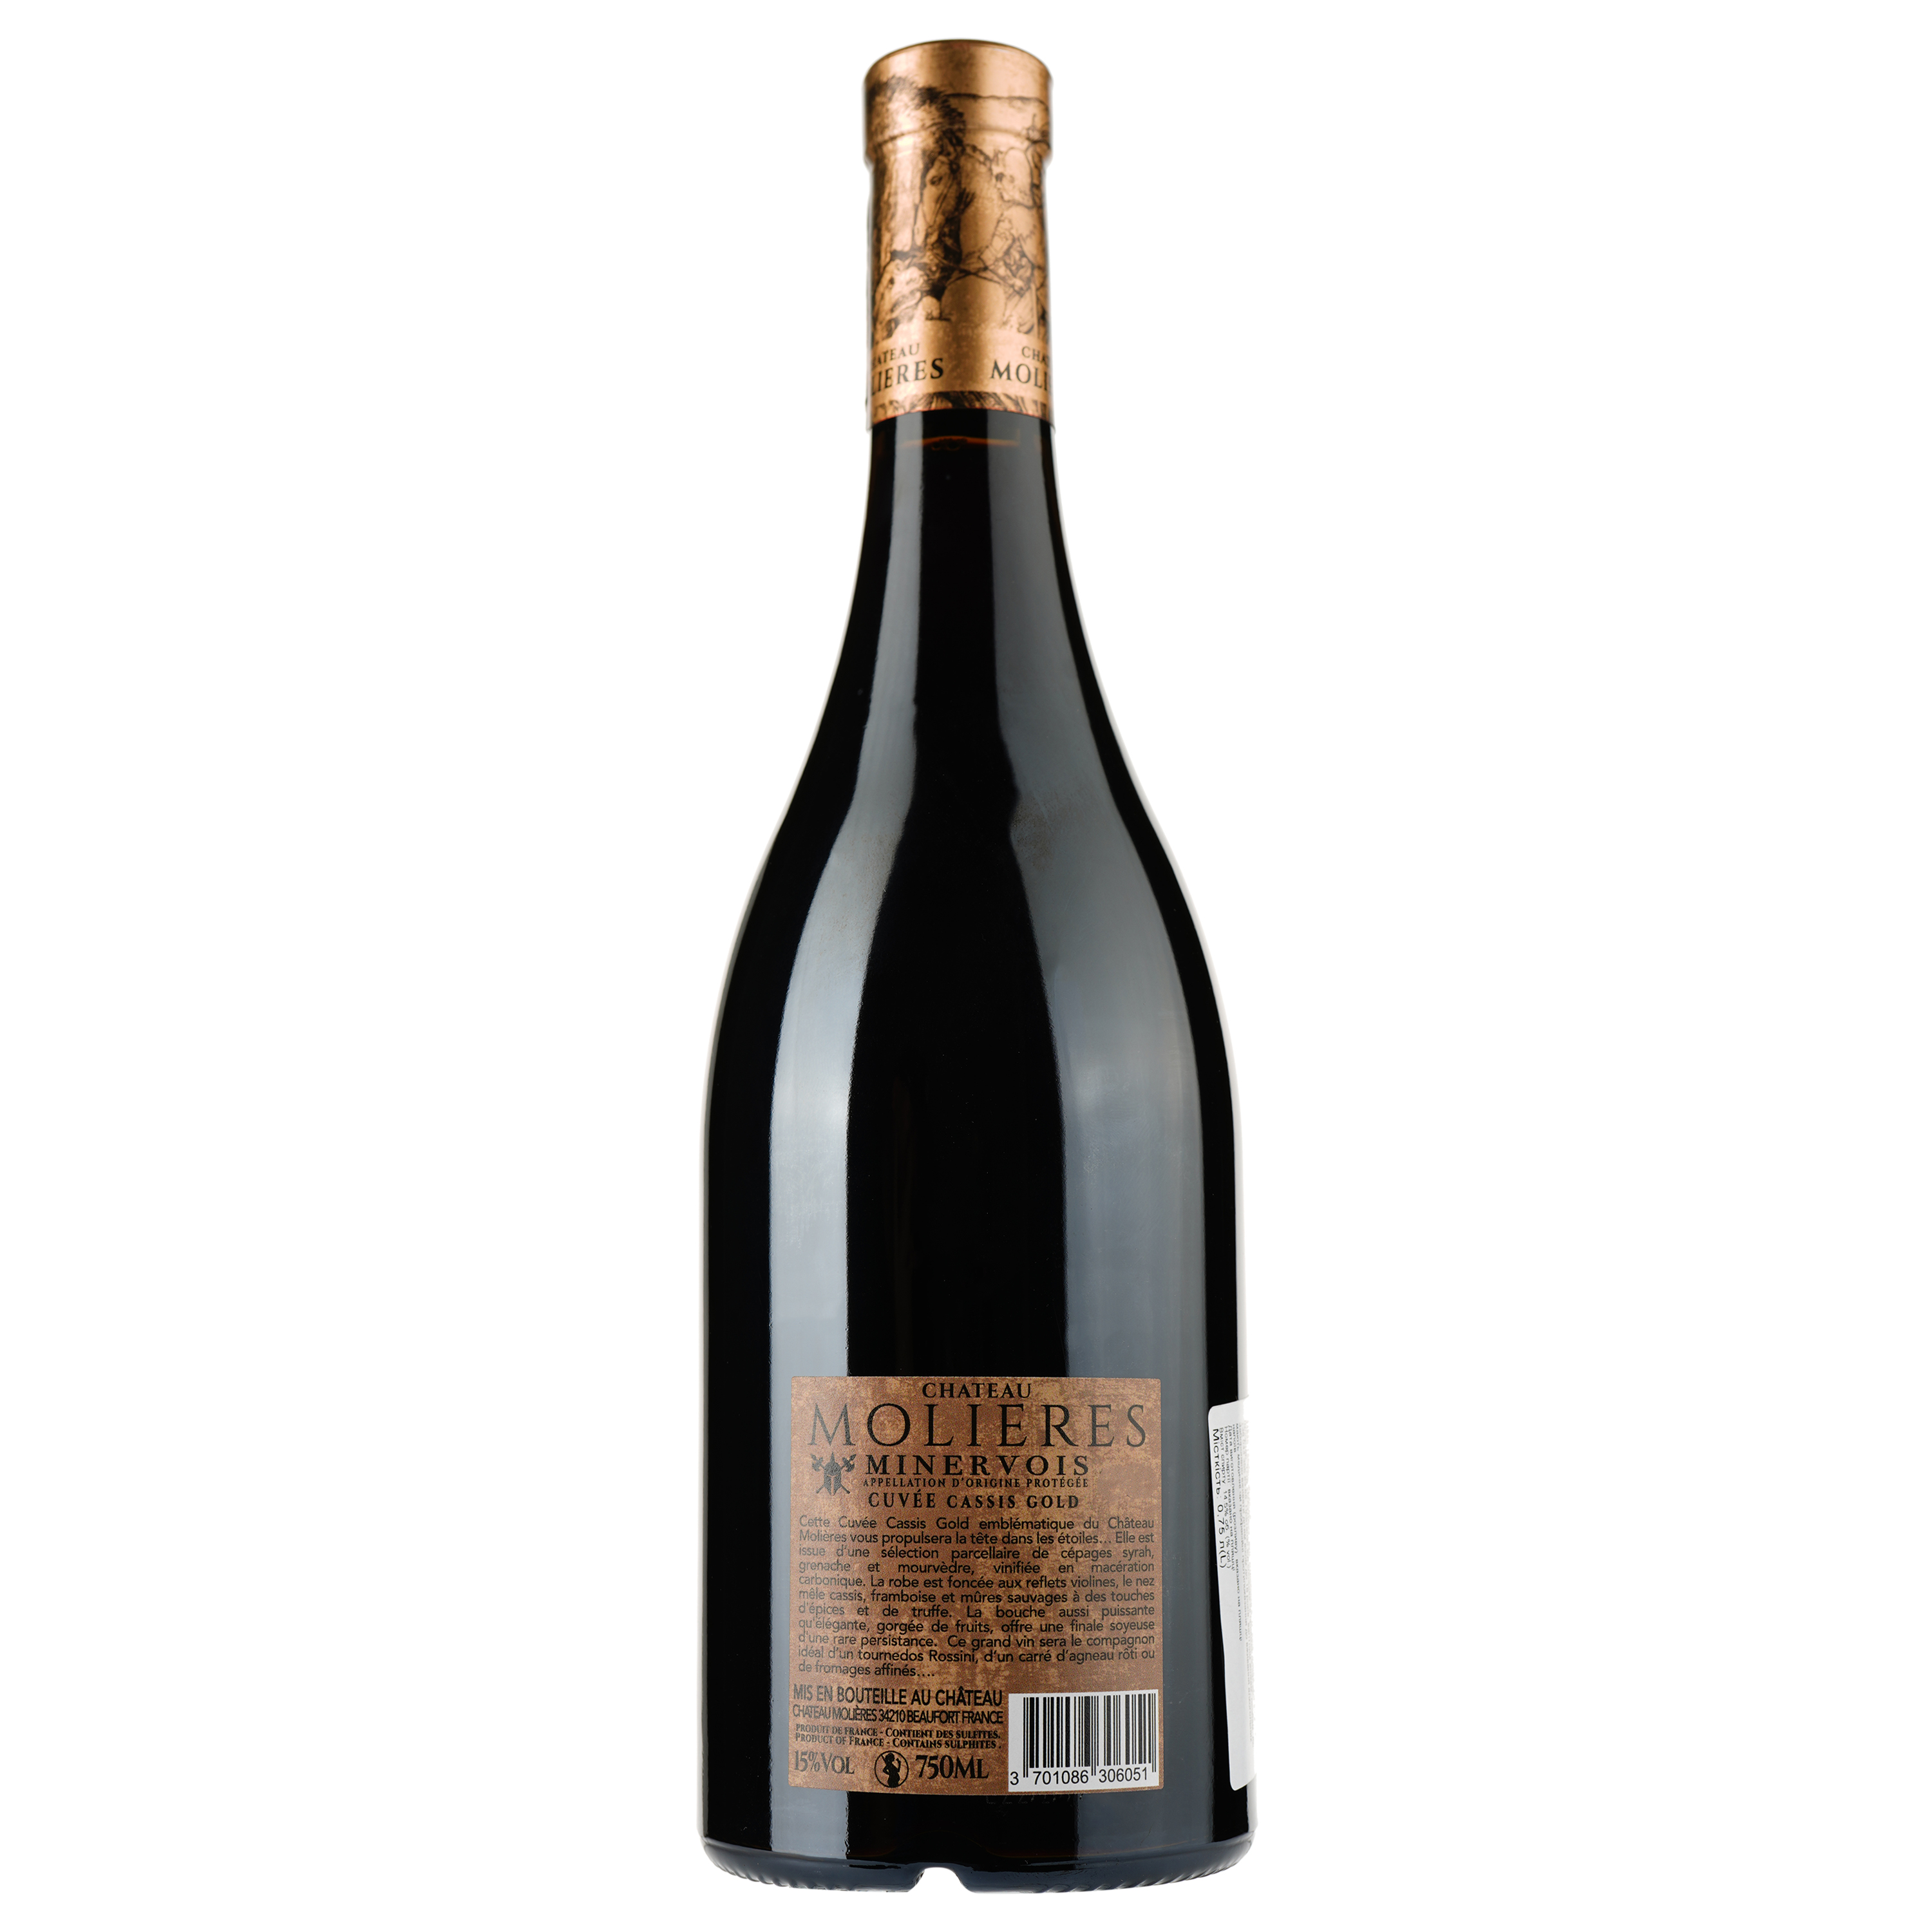 Вино Chateau Molieres Cuvee Cassis Gold 2019 Minervois AOP, червоне, сухе, 0,75 л - фото 2